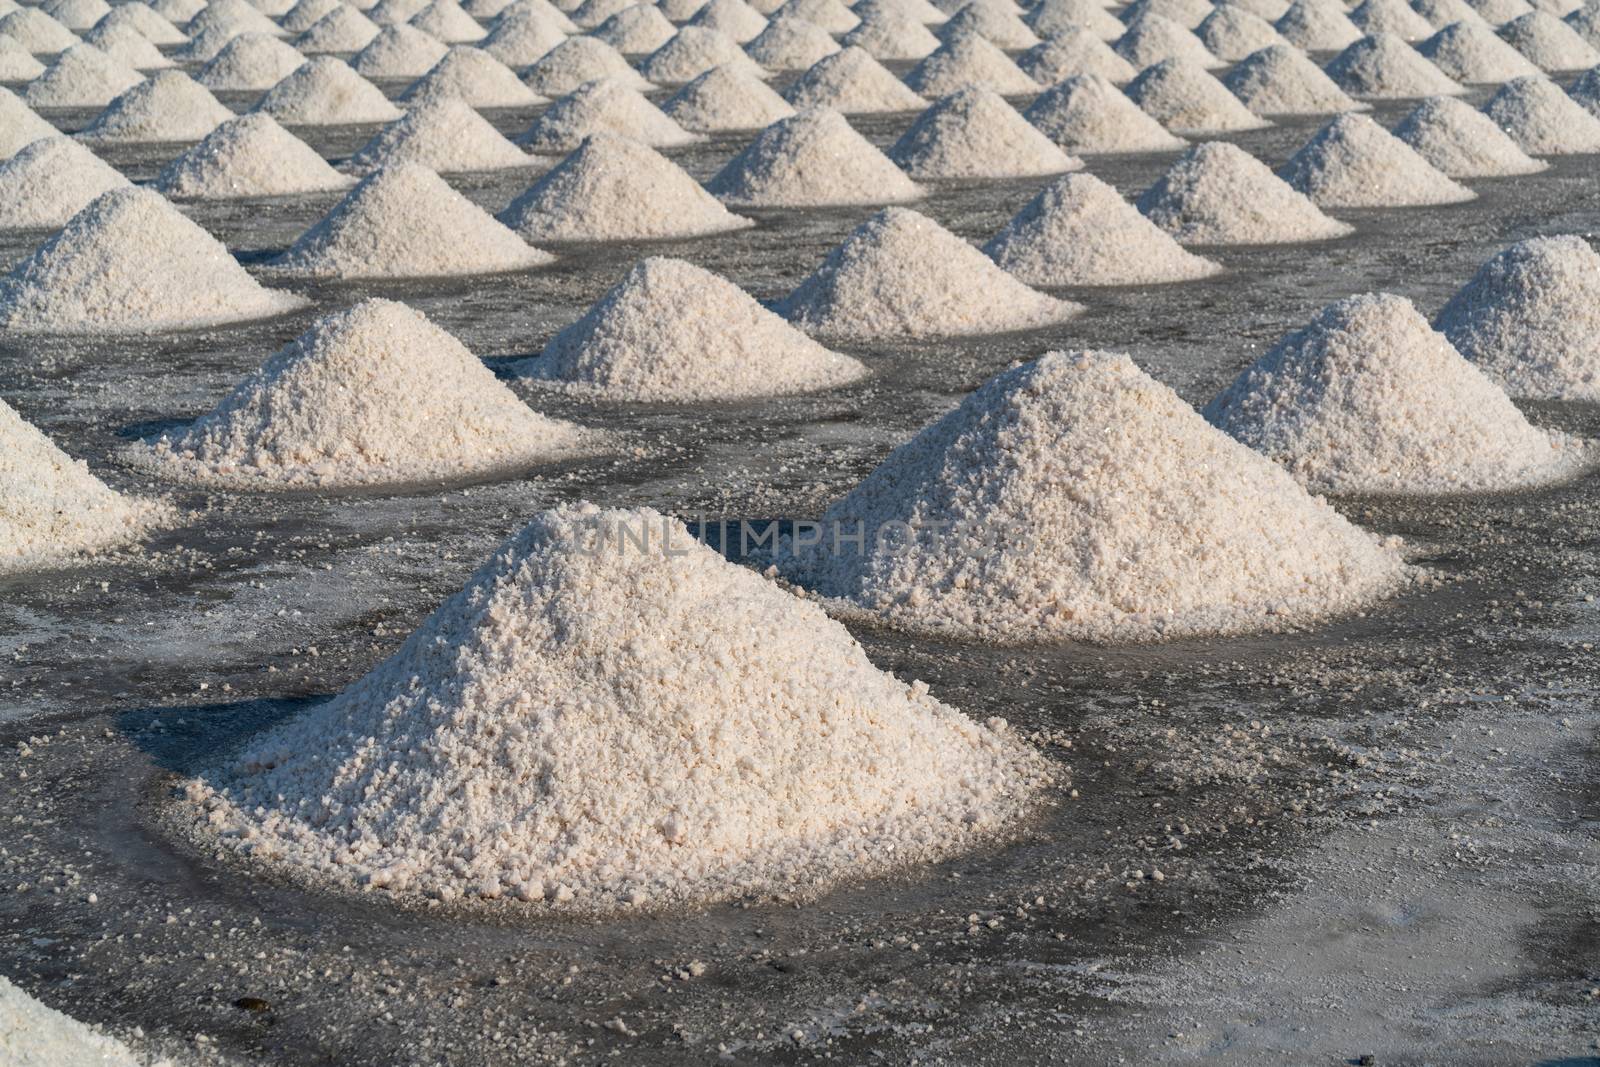 Salt in salt farm ready for harvest, Thailand.